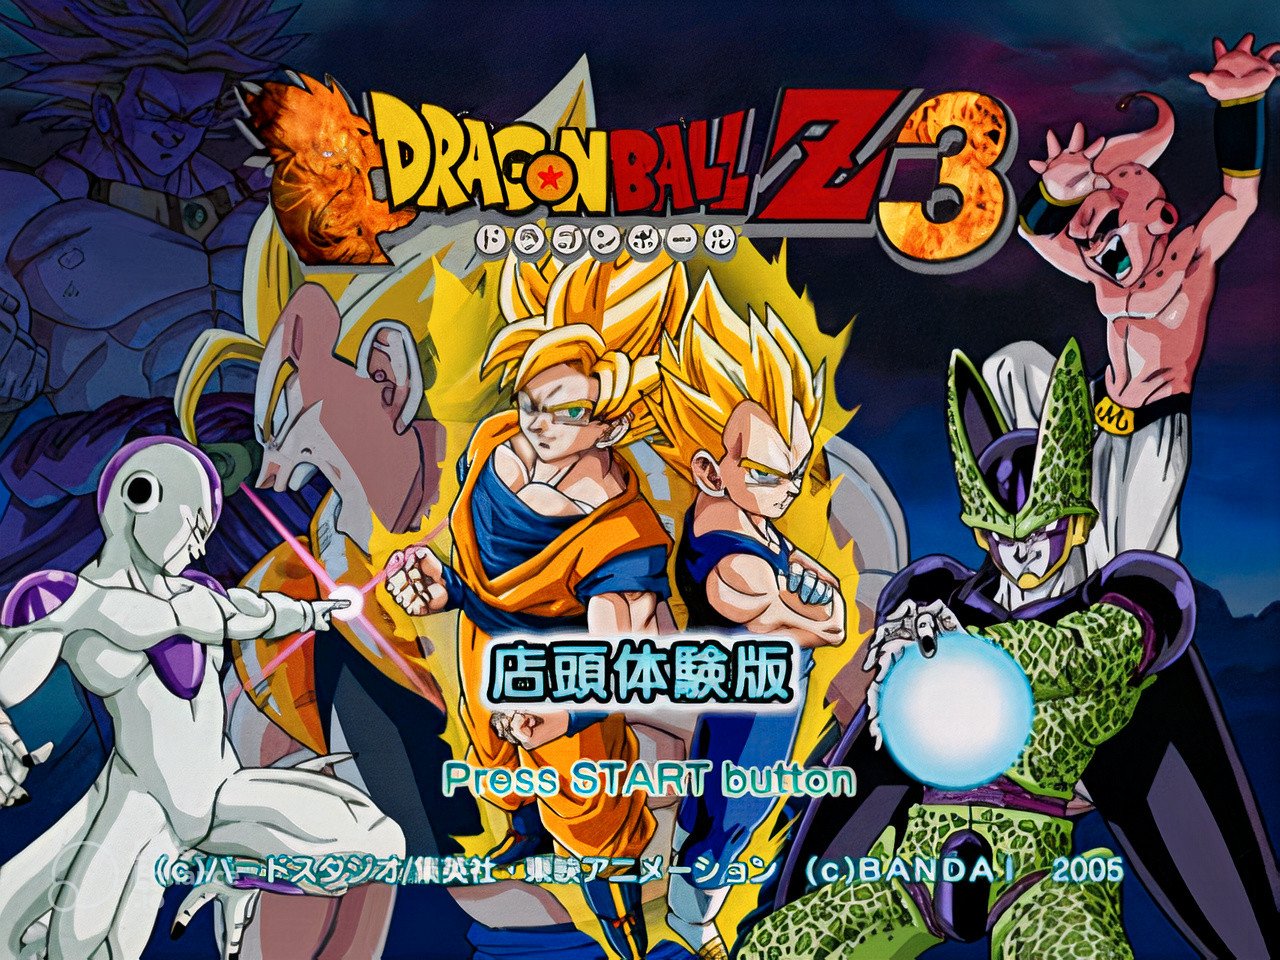 Filmes antigos de Dragon Ball Z ganhará versão remasterizada!